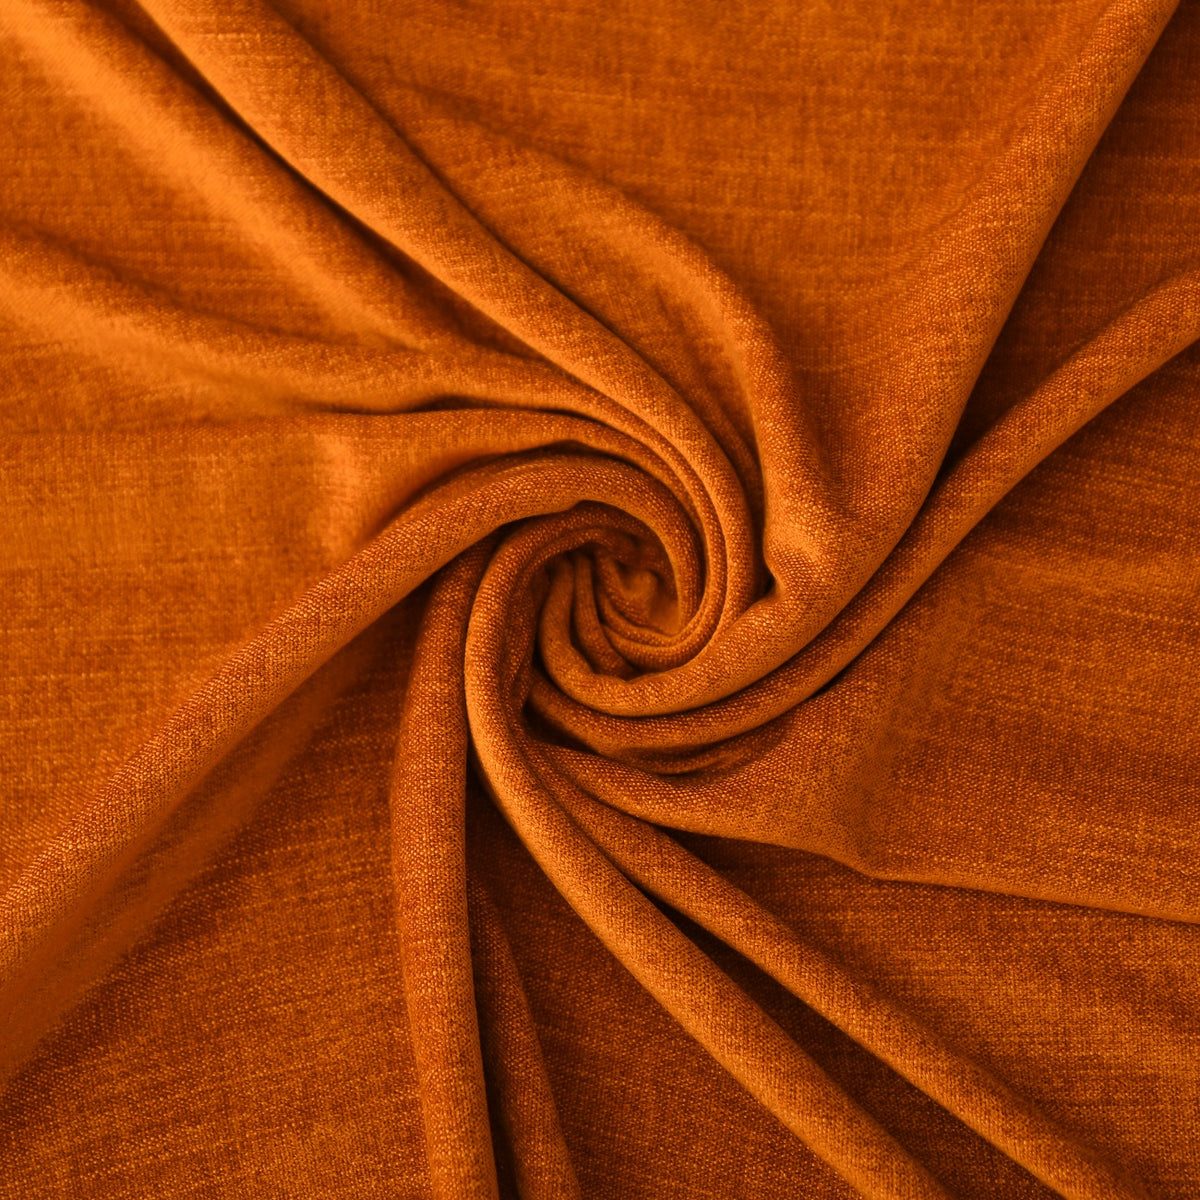 Night curtain orange Yeti